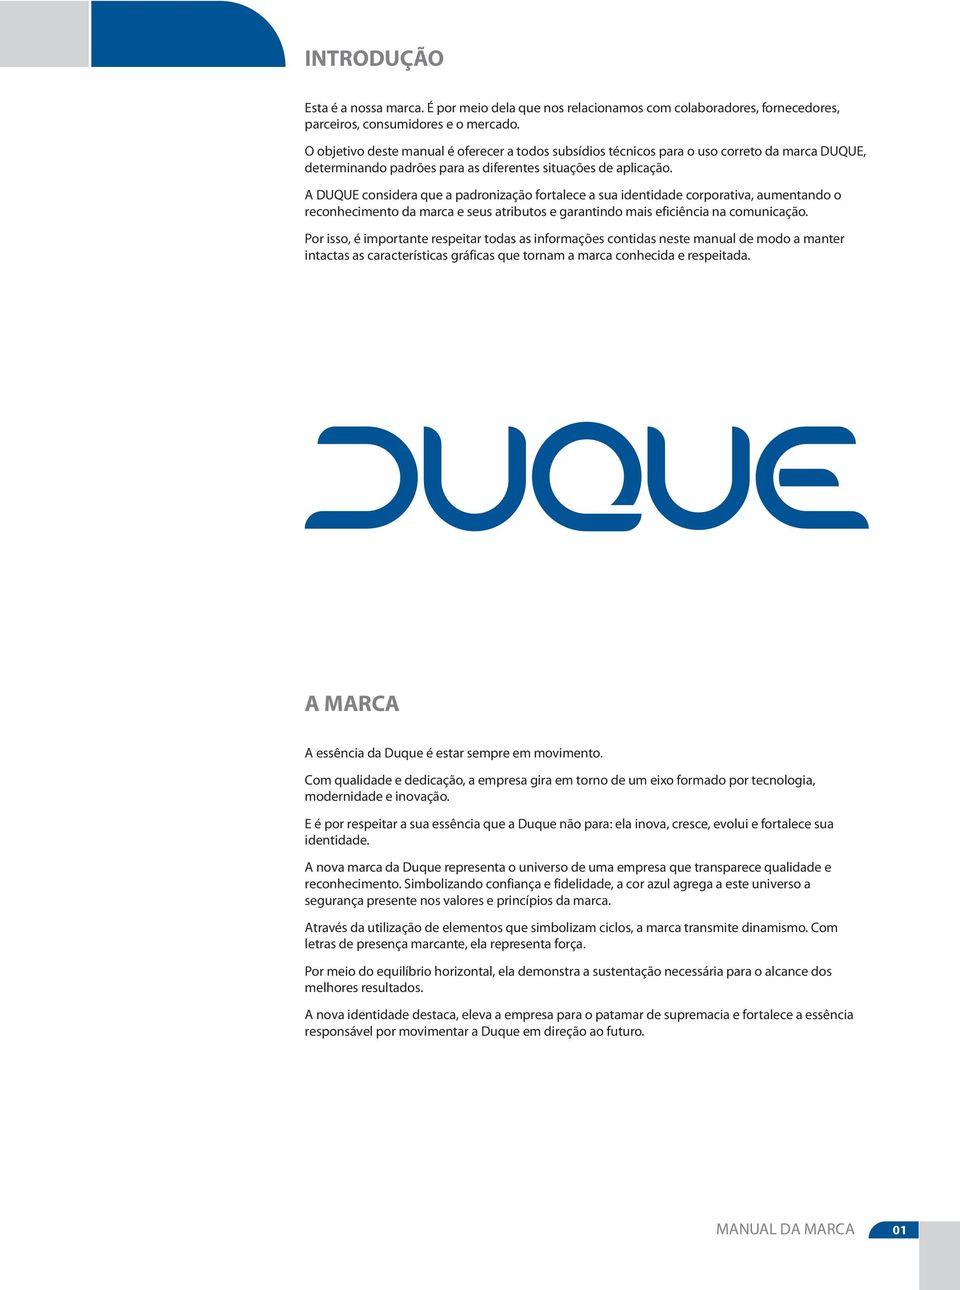 A DUQUE considera que a padronização fortalece a sua identidade corporativa, aumentando o reconhecimento da marca e seus atributos e garantindo mais eficiência na comunicação.